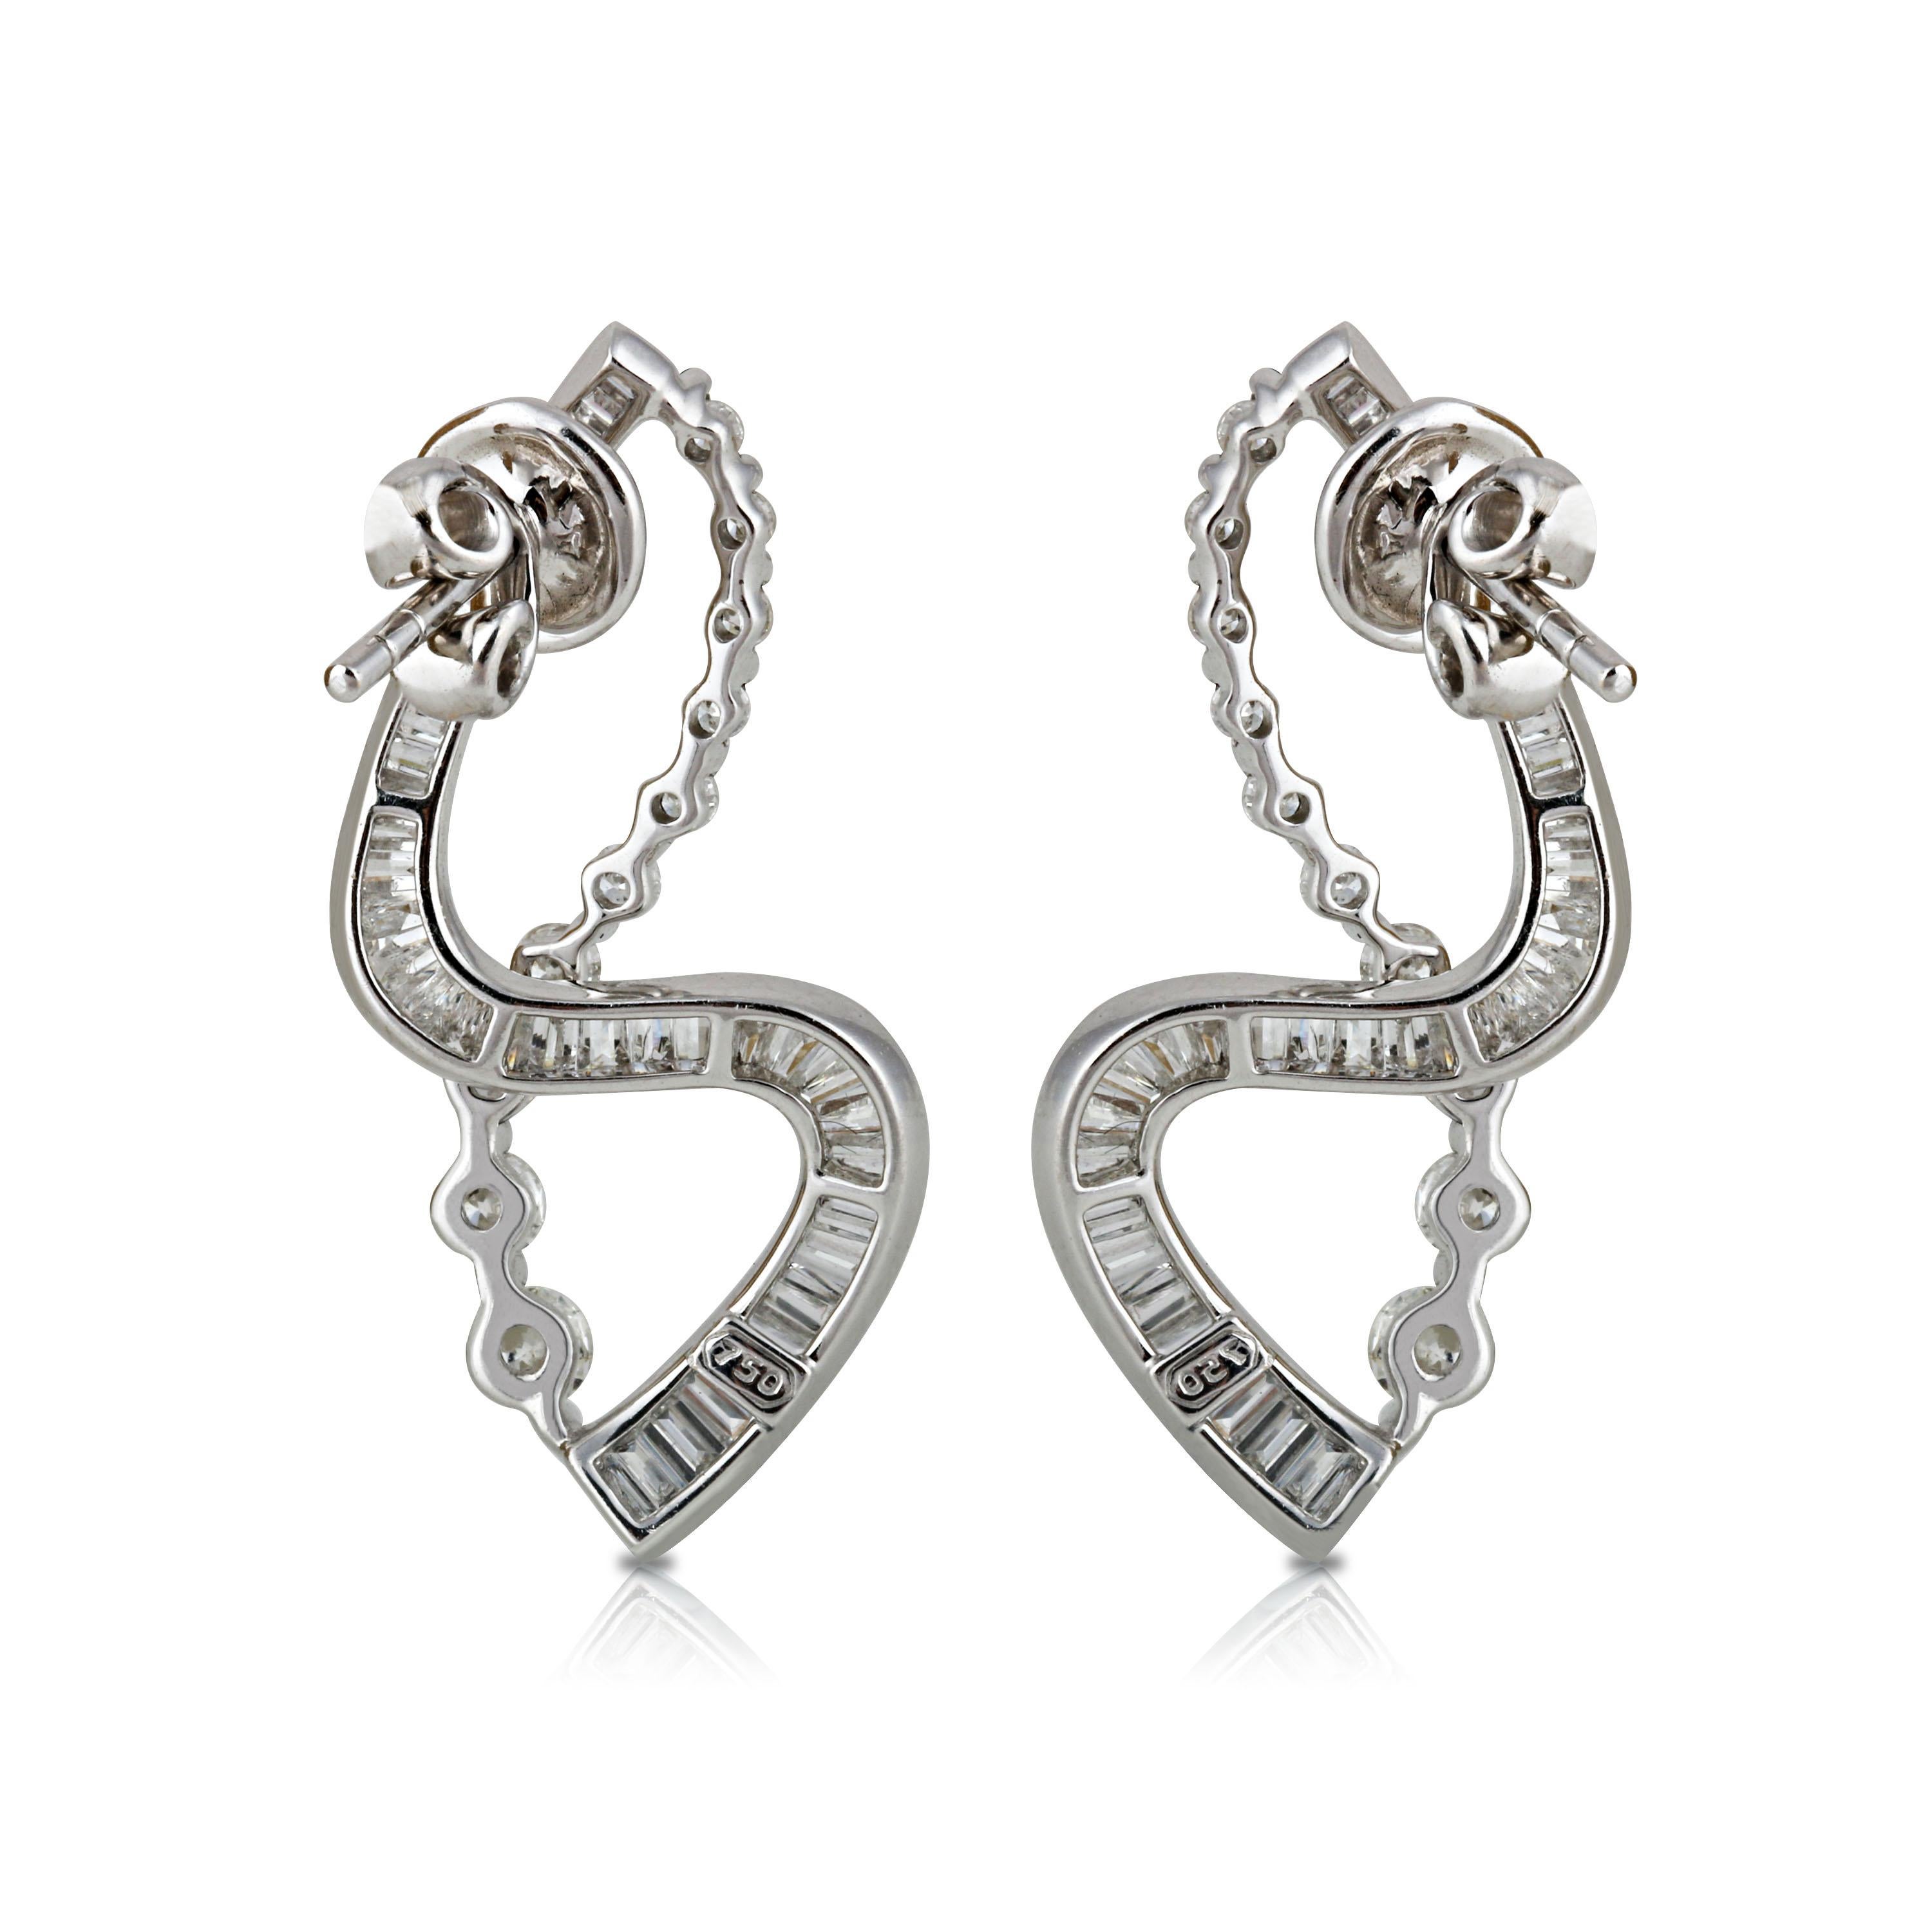 Studio Rêves S-Shaped Diamond Earrings in 18 Karat White Gold (Baguetteschliff)